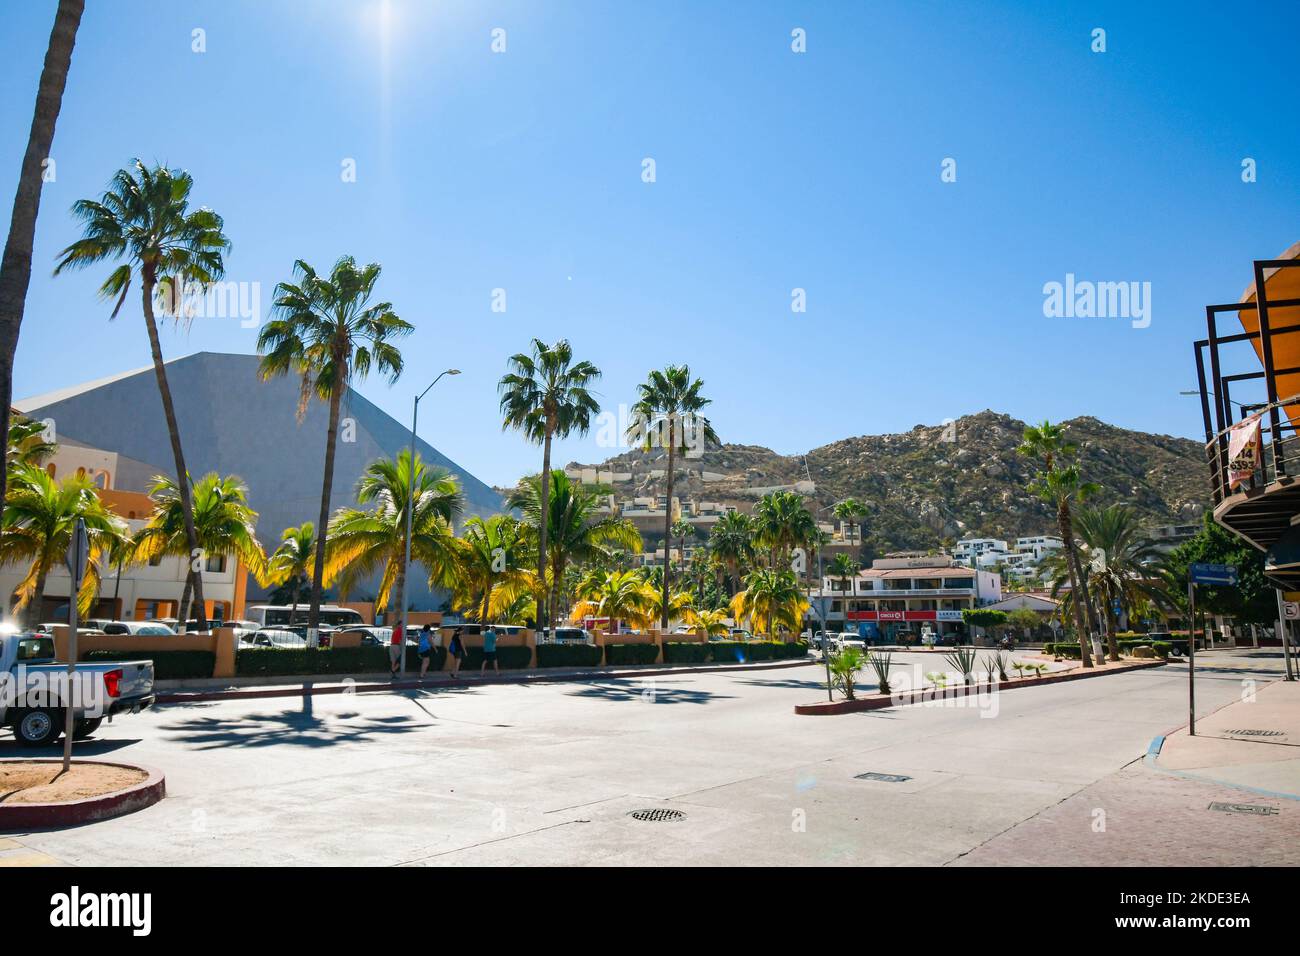 Downtown Cabo San Lucas, Baja California Sur, Mexico. Stock Photo